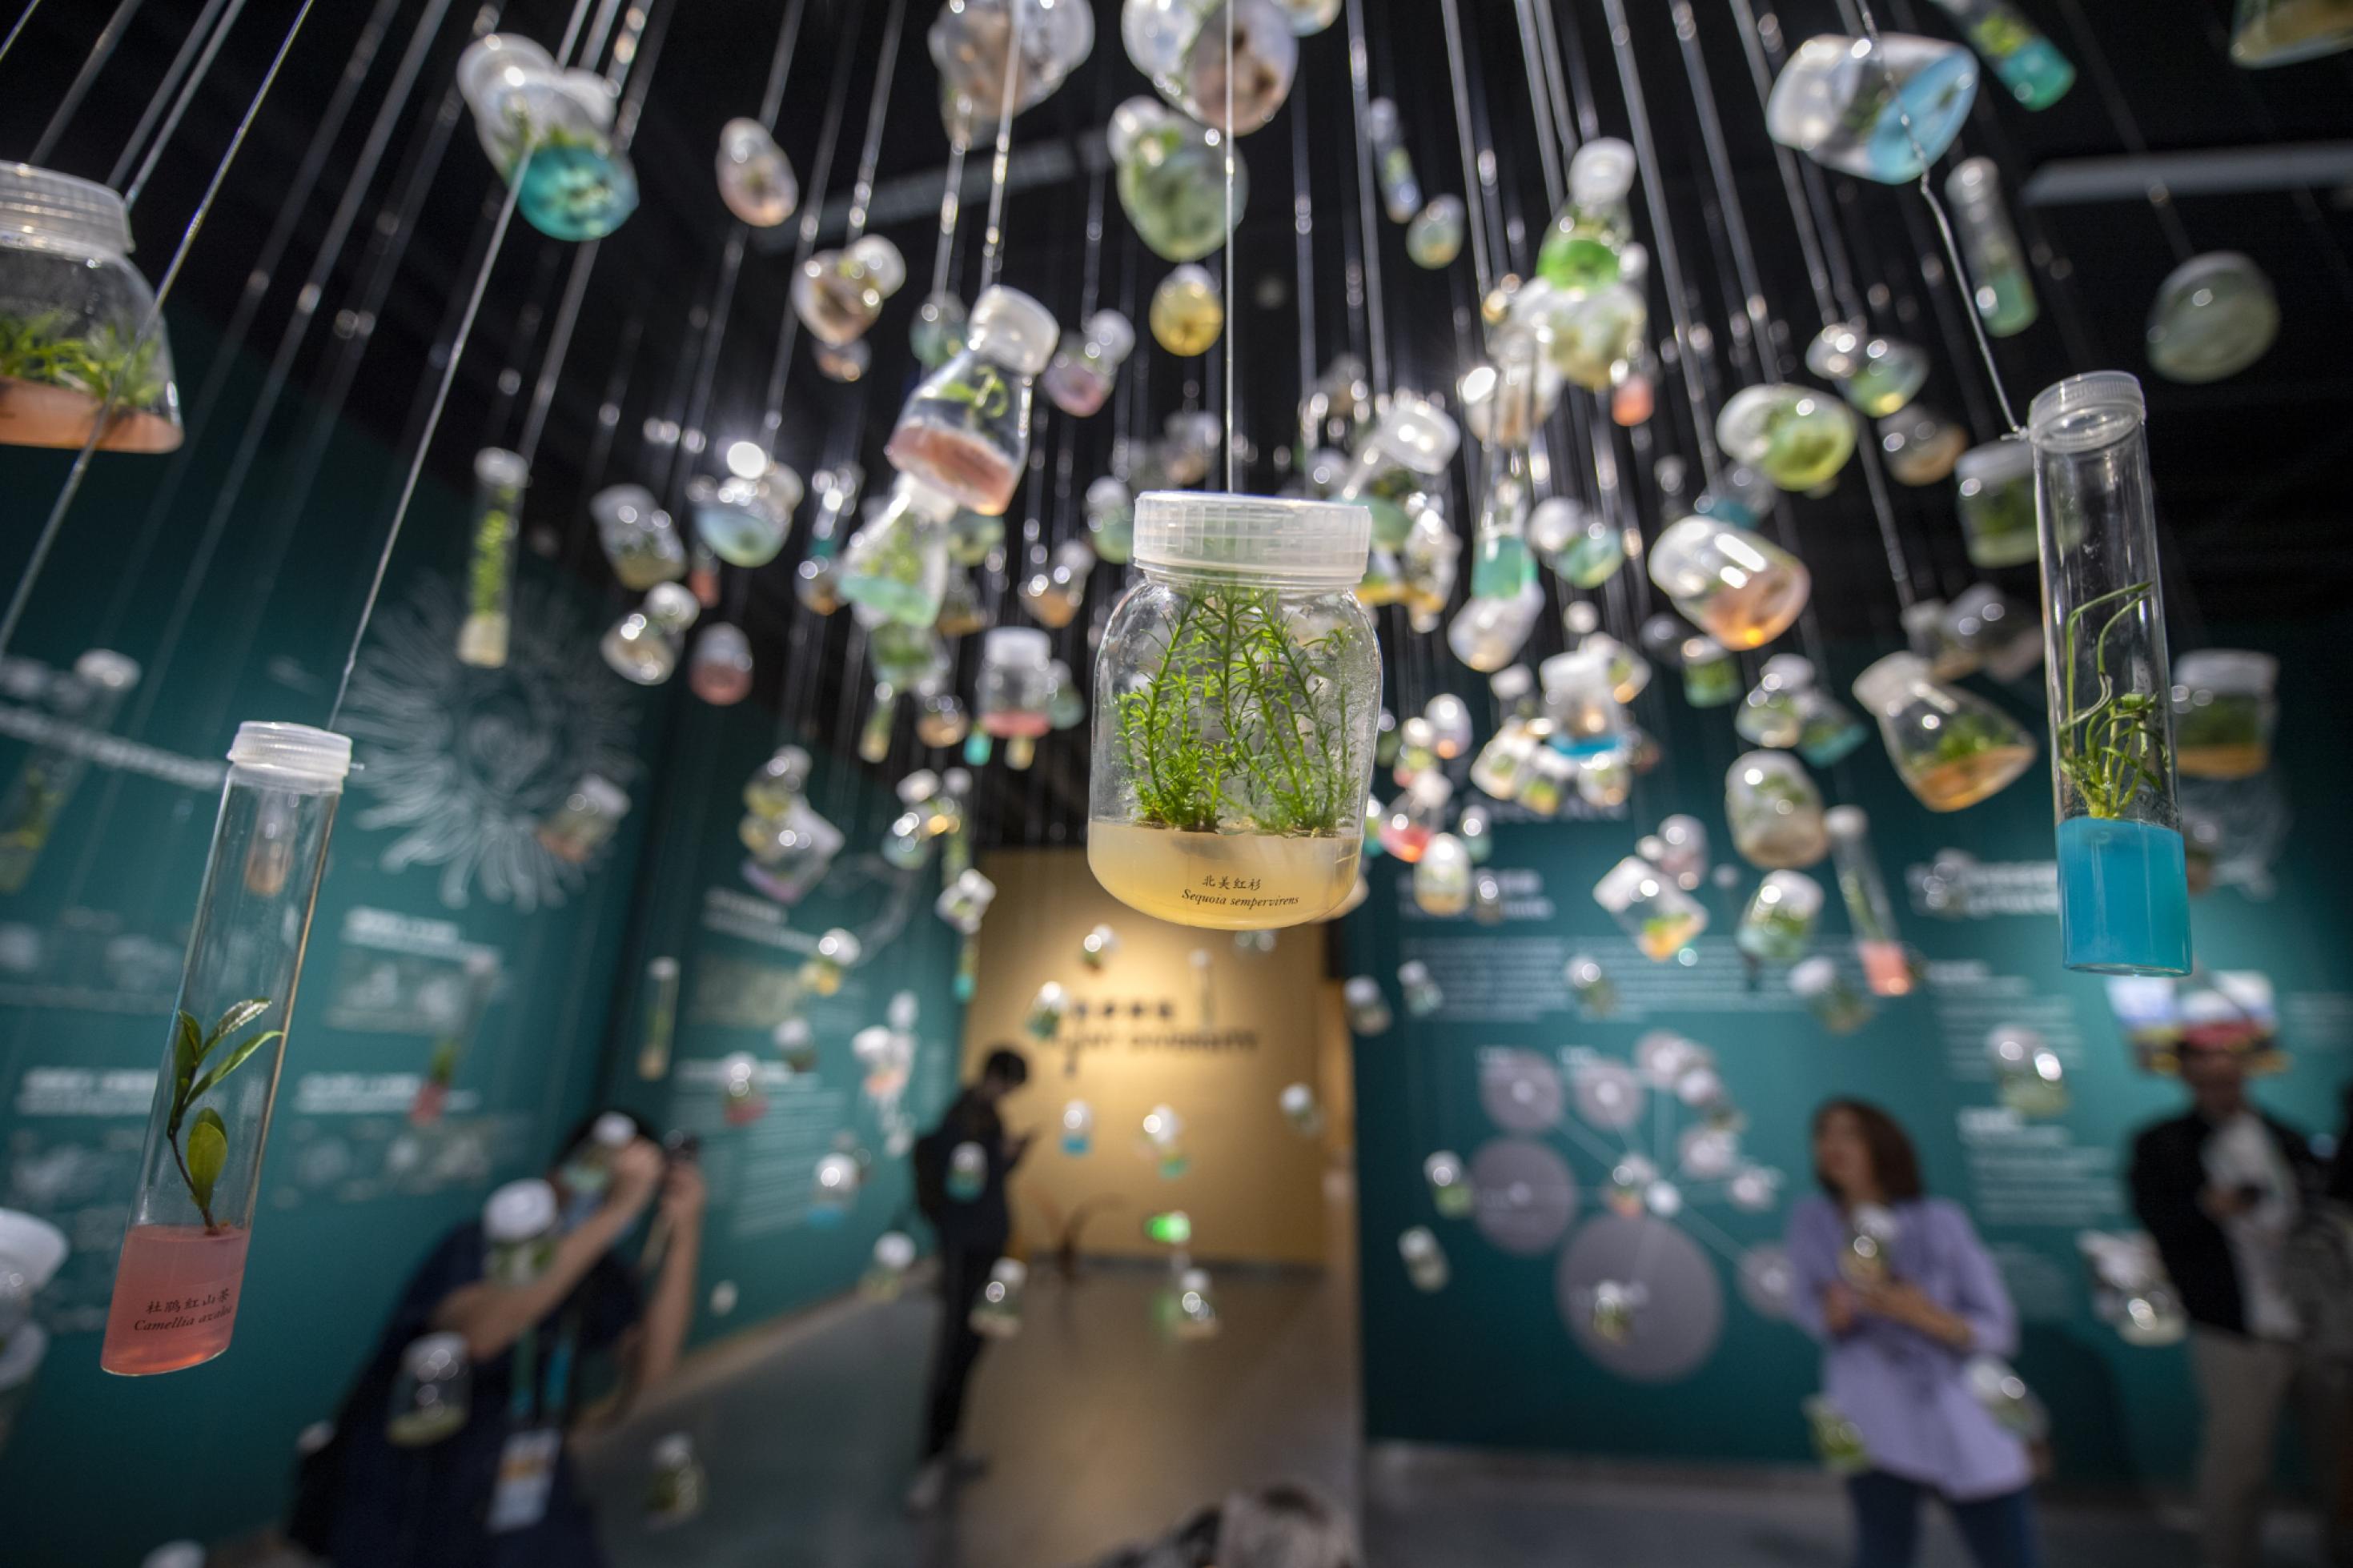 Kleine Pflanzen und Samen hängen in Glasfläschchen in einer Kunst-Installation.